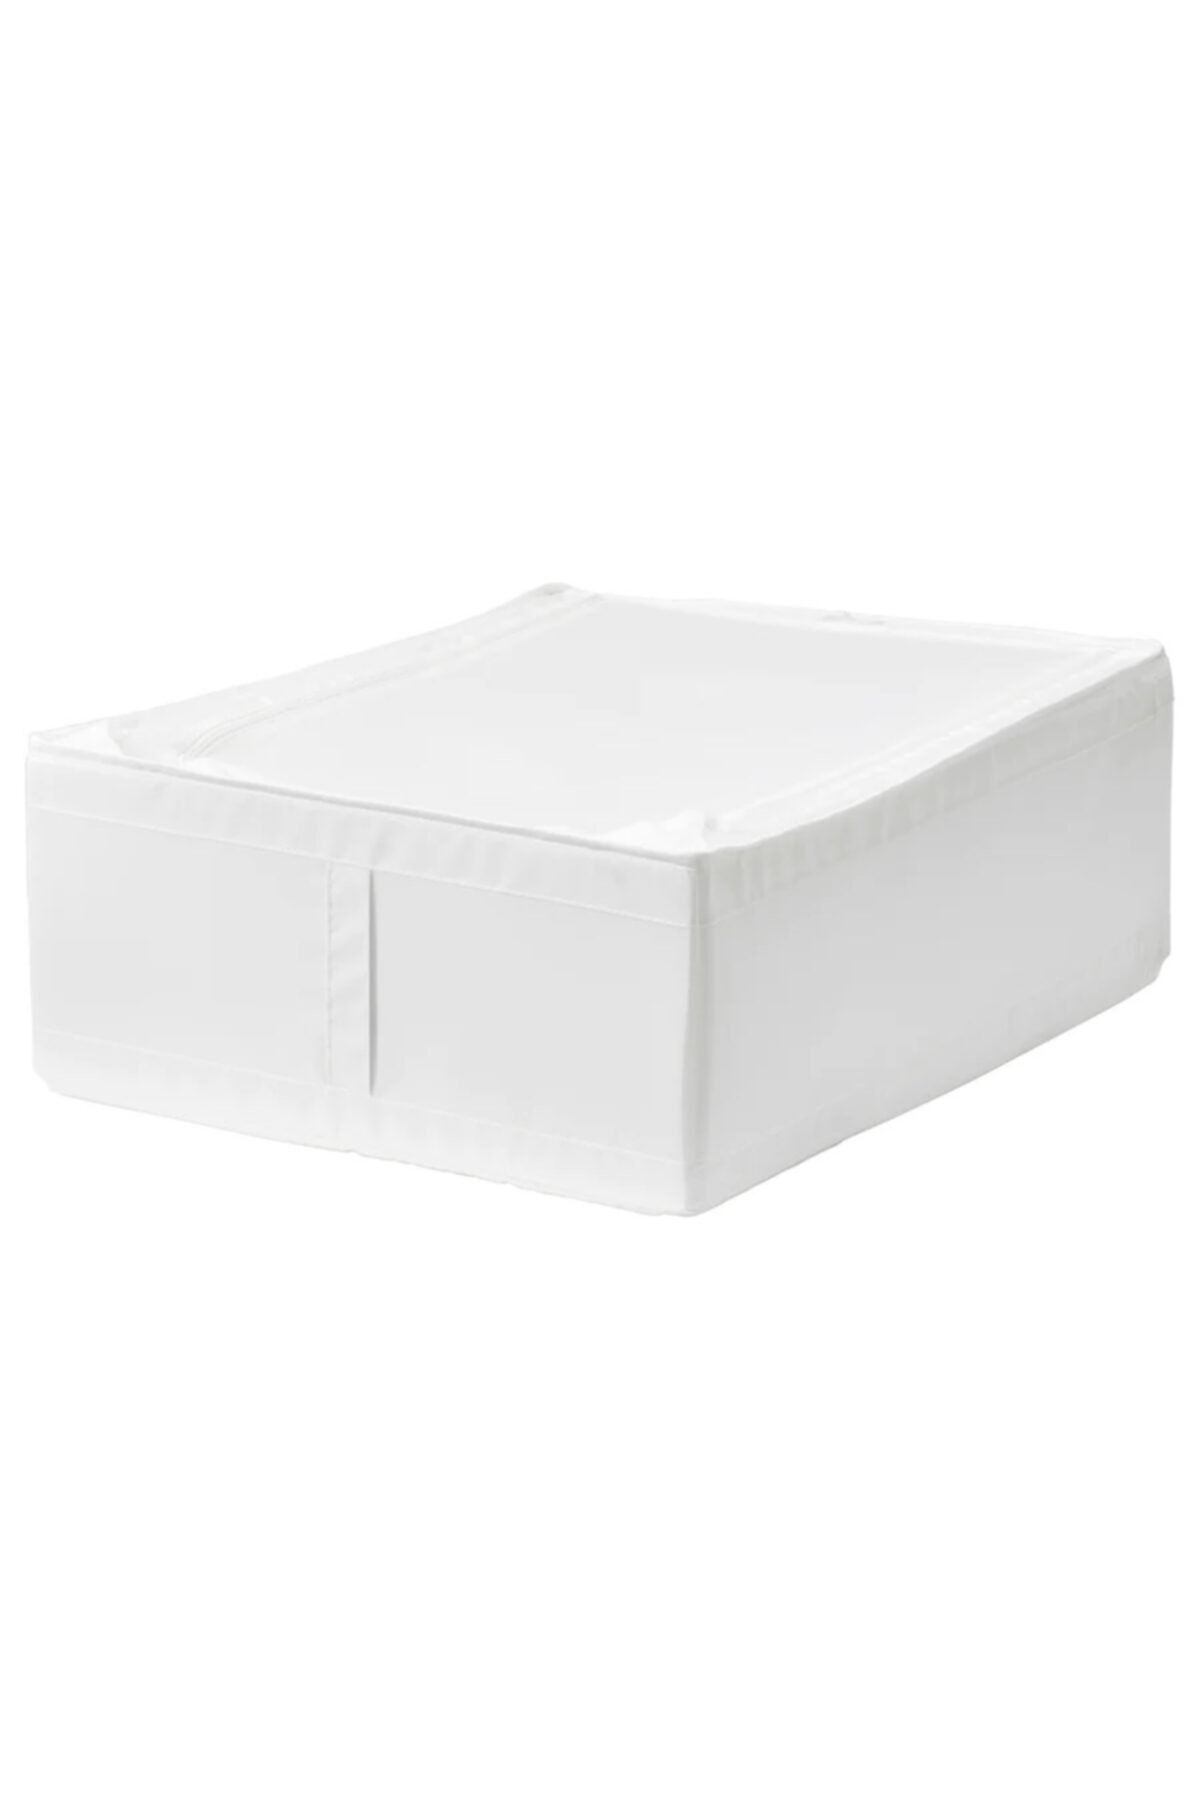 IKEA Skubb 44x55x19 Beyaz Hurç Yatak Altı Yastık Çarşaf Nevresim Giysi Saklama Kutusu Hurç Kutu